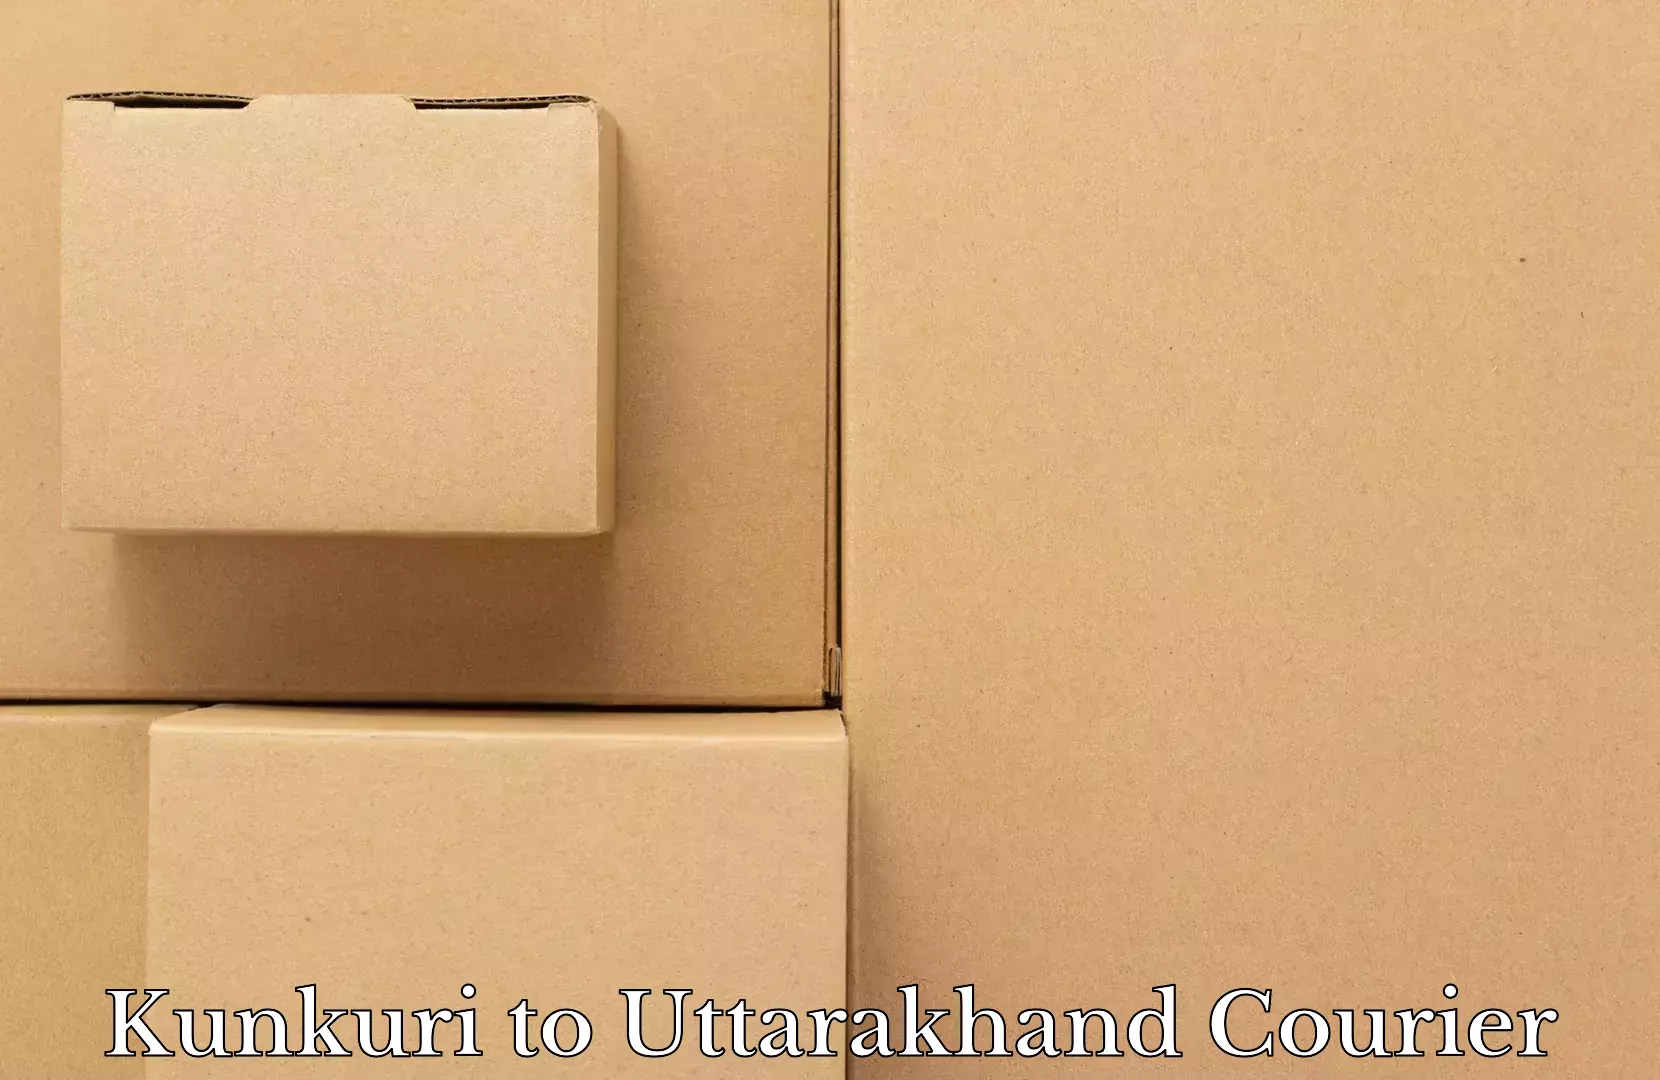 Luggage shipment tracking Kunkuri to Uttarakhand